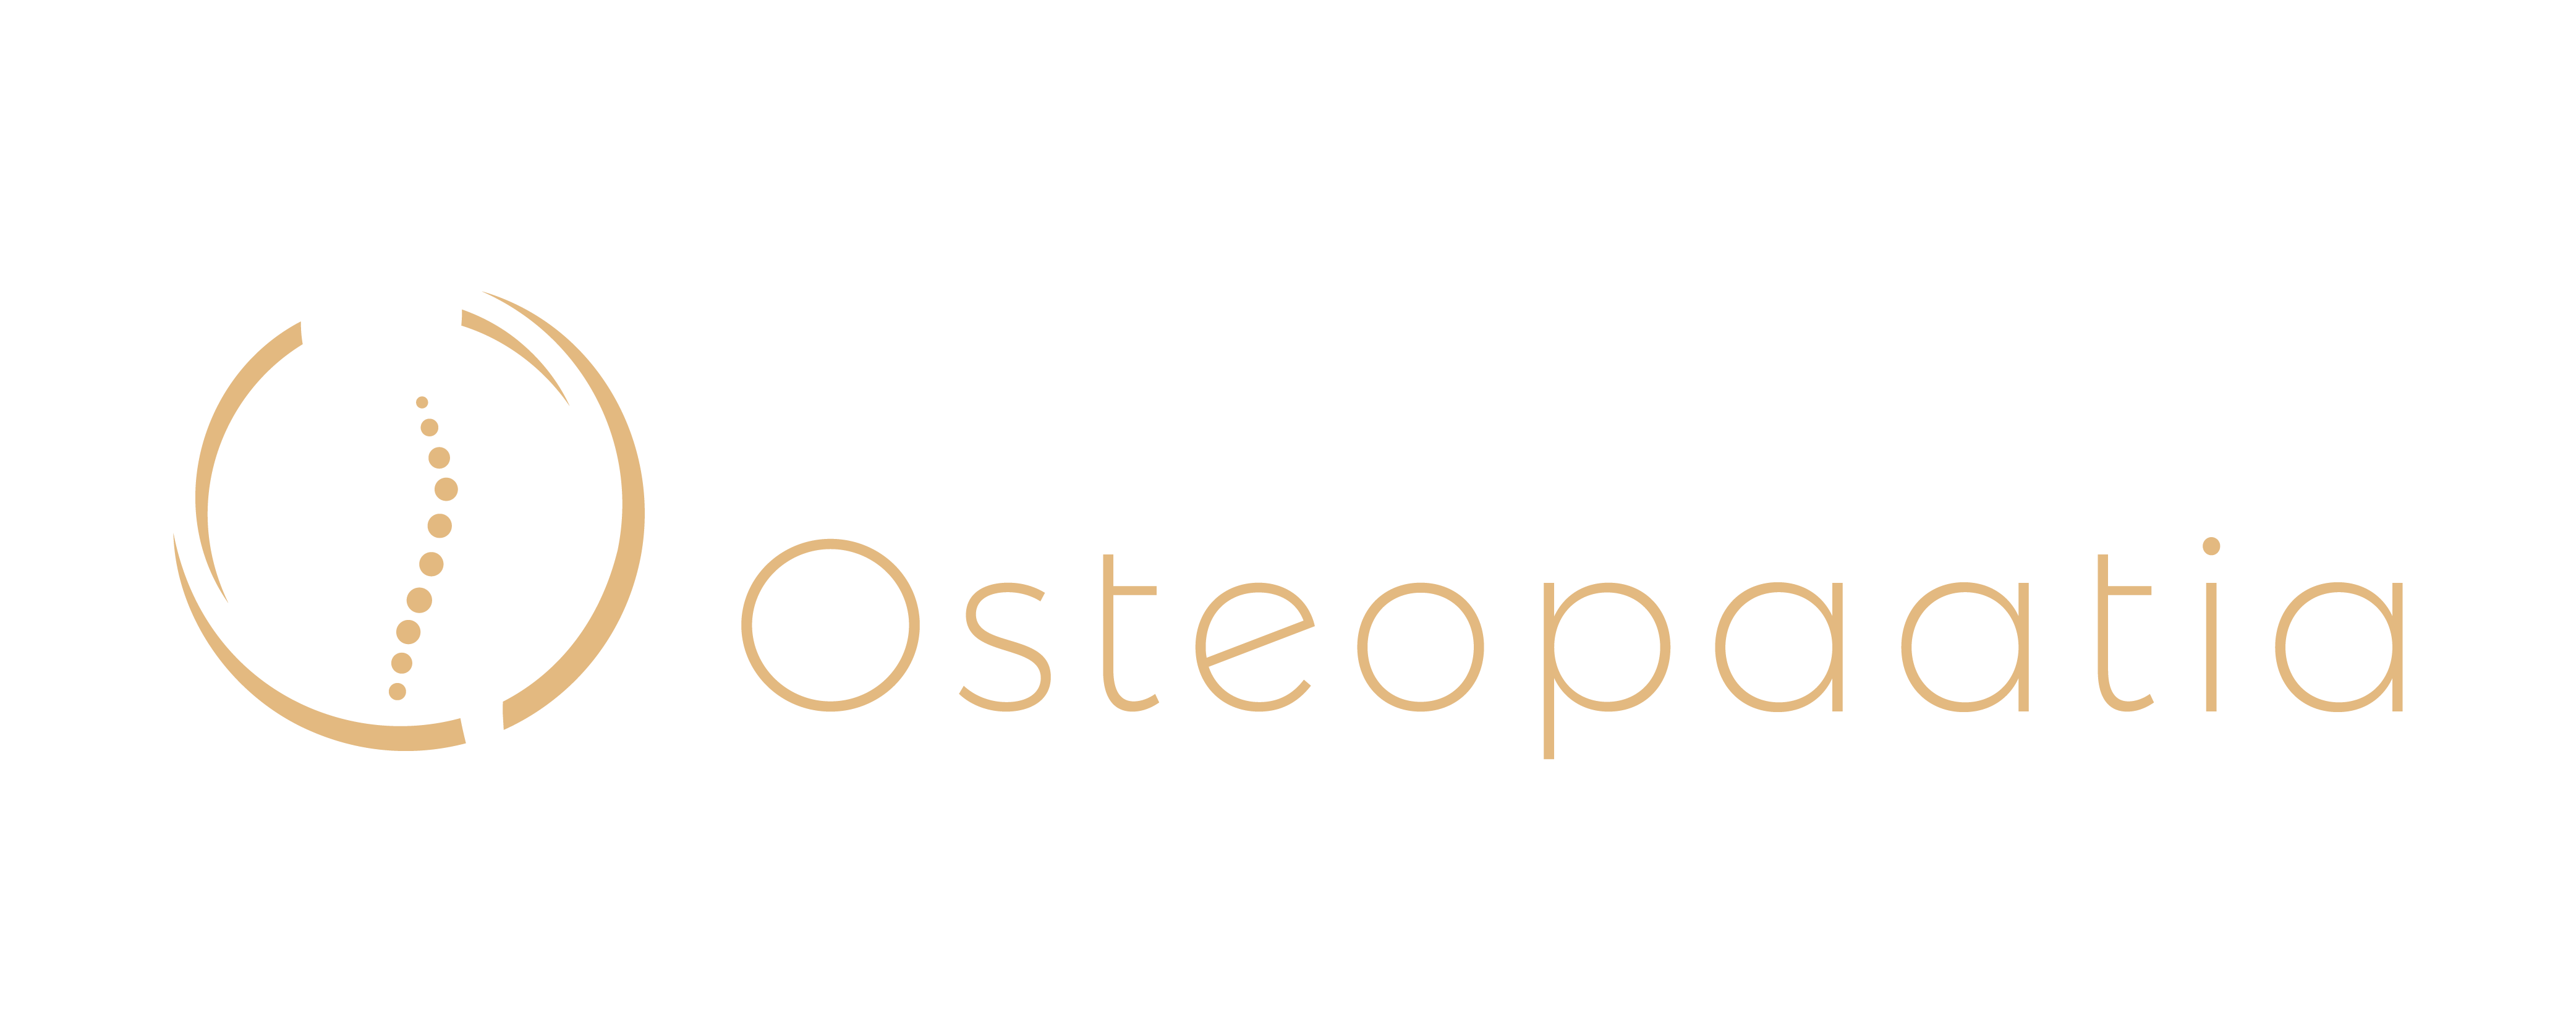 Ortopeediline Osteopaatia